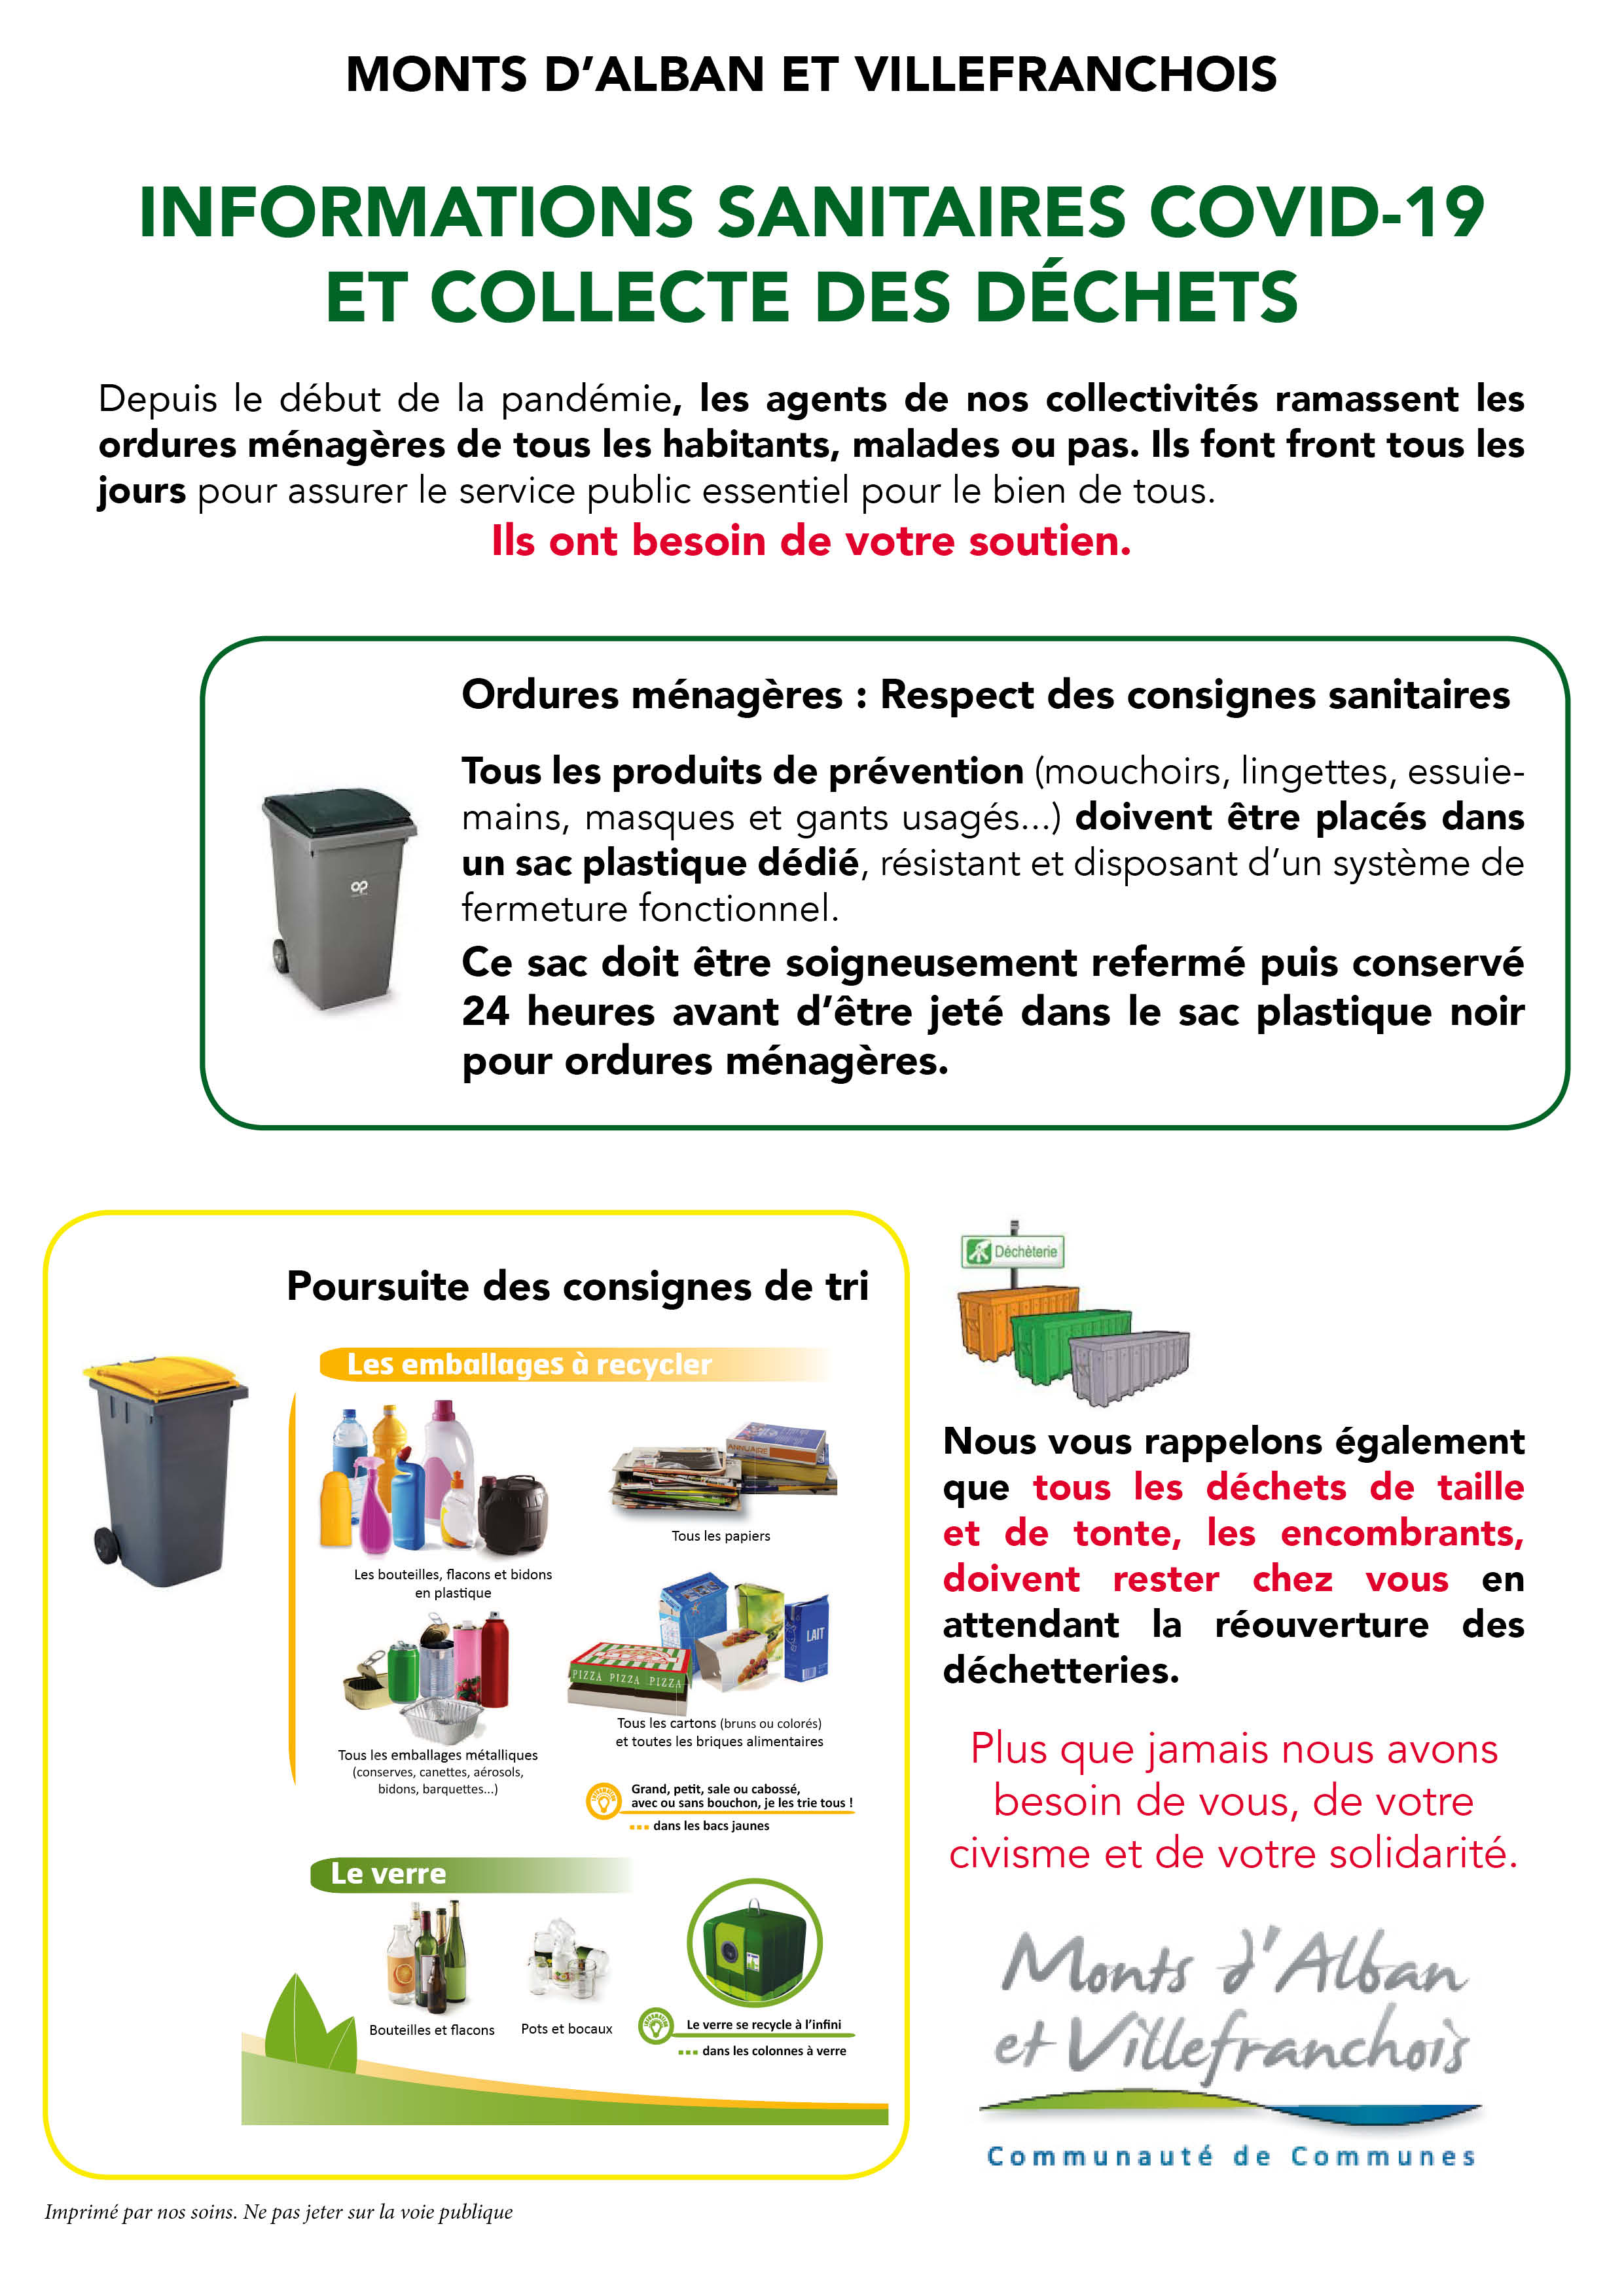 Informations sanitaires Covid-19 et collecte des déchets